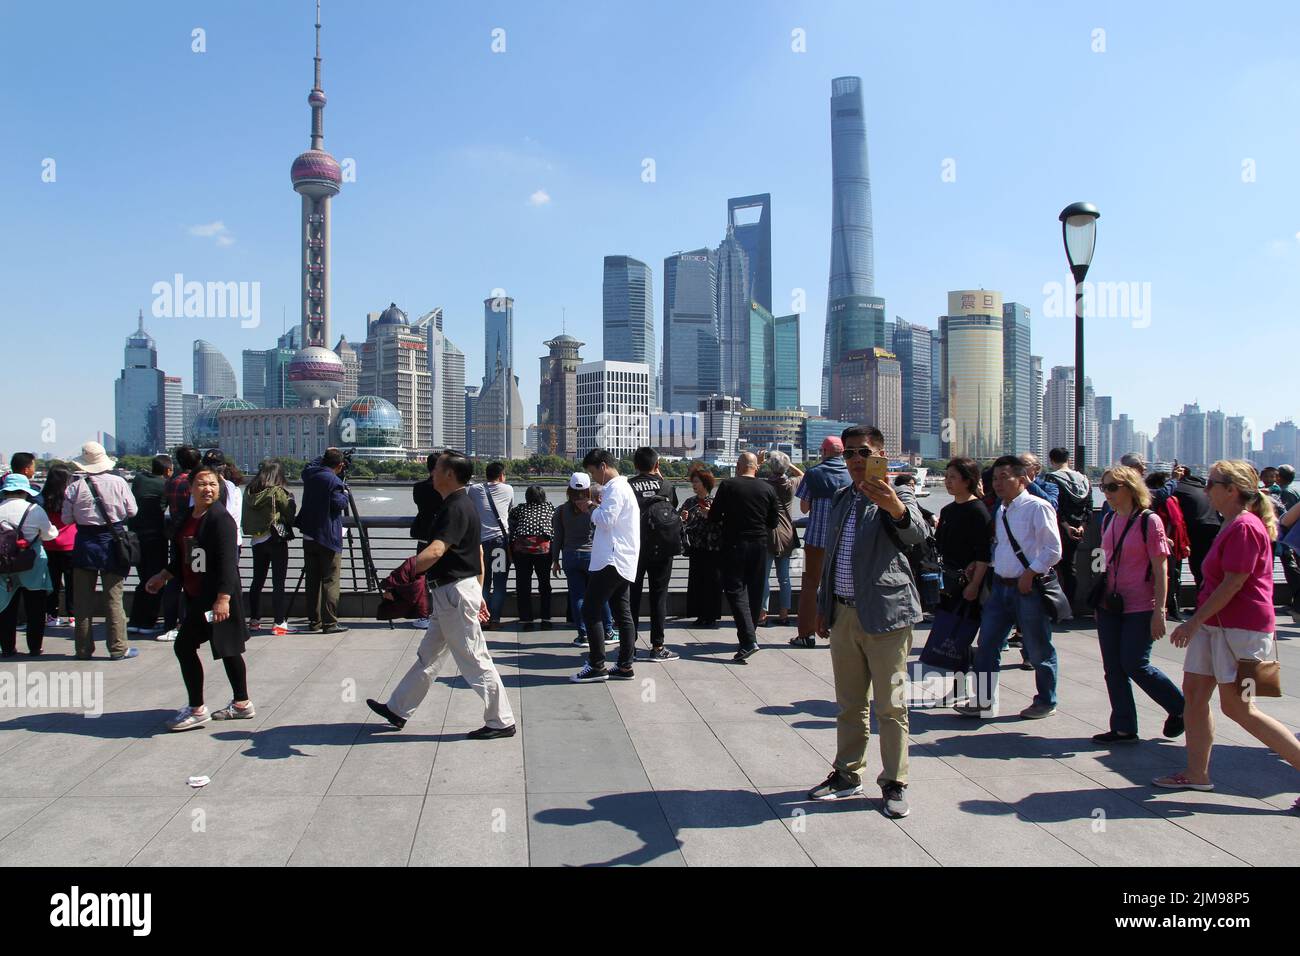 Touristenmassen, die am Bund vorbei spazieren und Fotos von Shanghais klassischer Skyline machen - dem Geschäftsviertel Pudong (China). Stockfoto